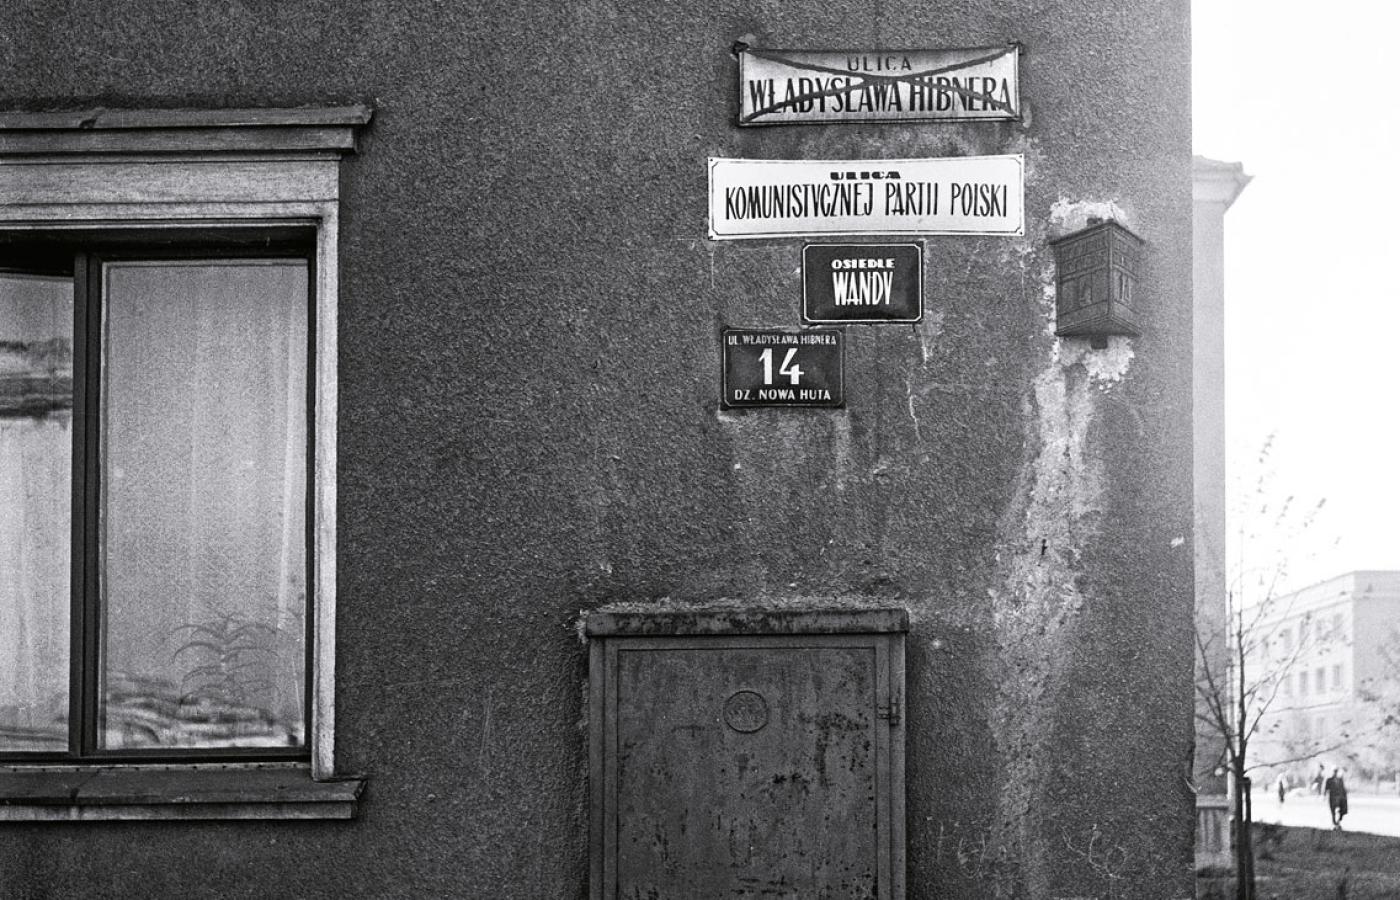 Zmiana patrona ulicy – stara przekreślona tablica Władysława Hibnera i nowa z nazwą Komunistycznej Partii Polski, Nowa Huta, Kraków, 1959 r.